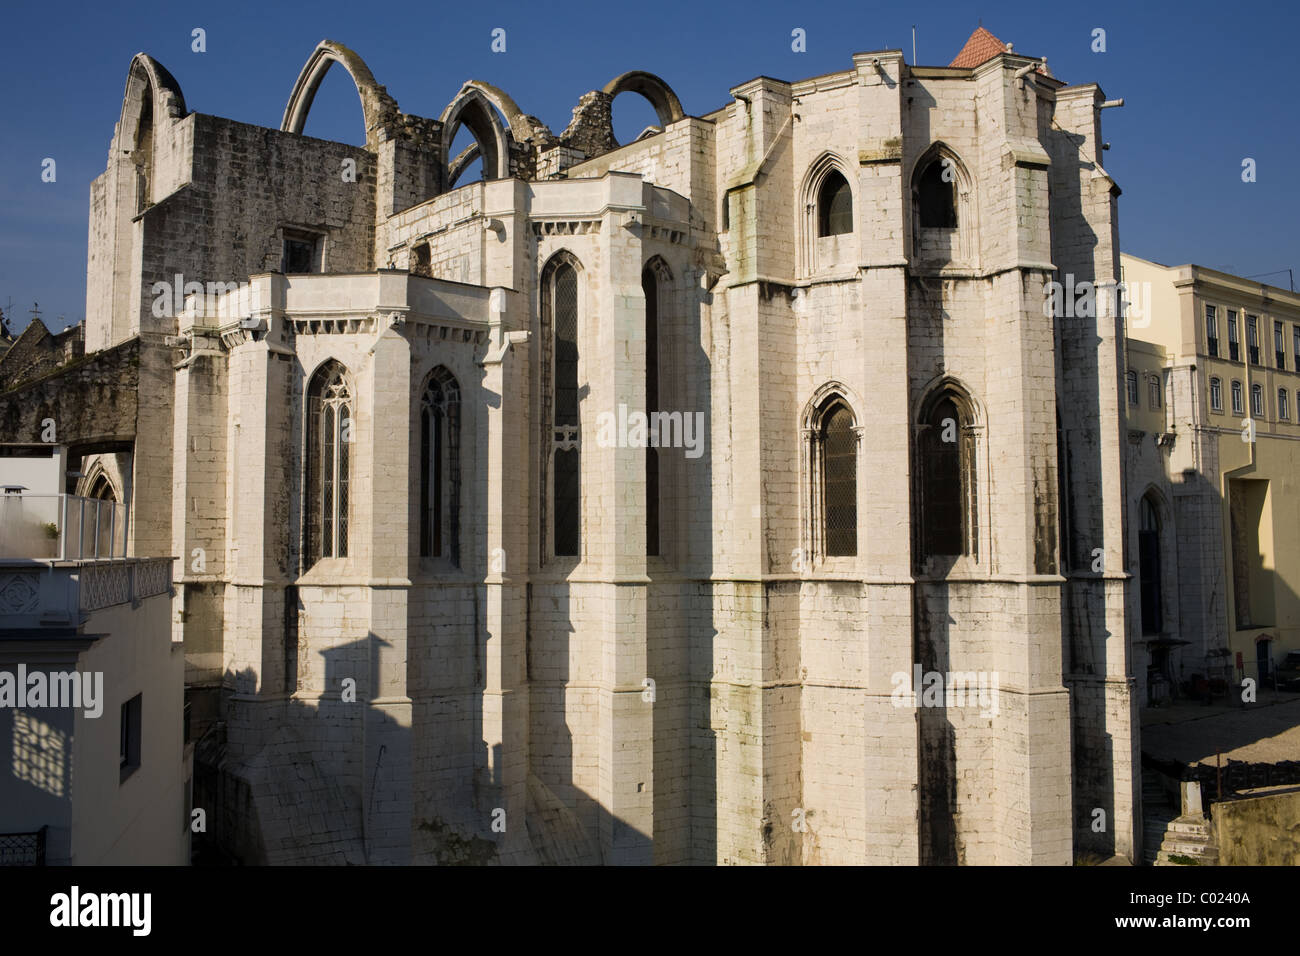 Convento do Carmo, Lisbon, Portugal Stock Photo